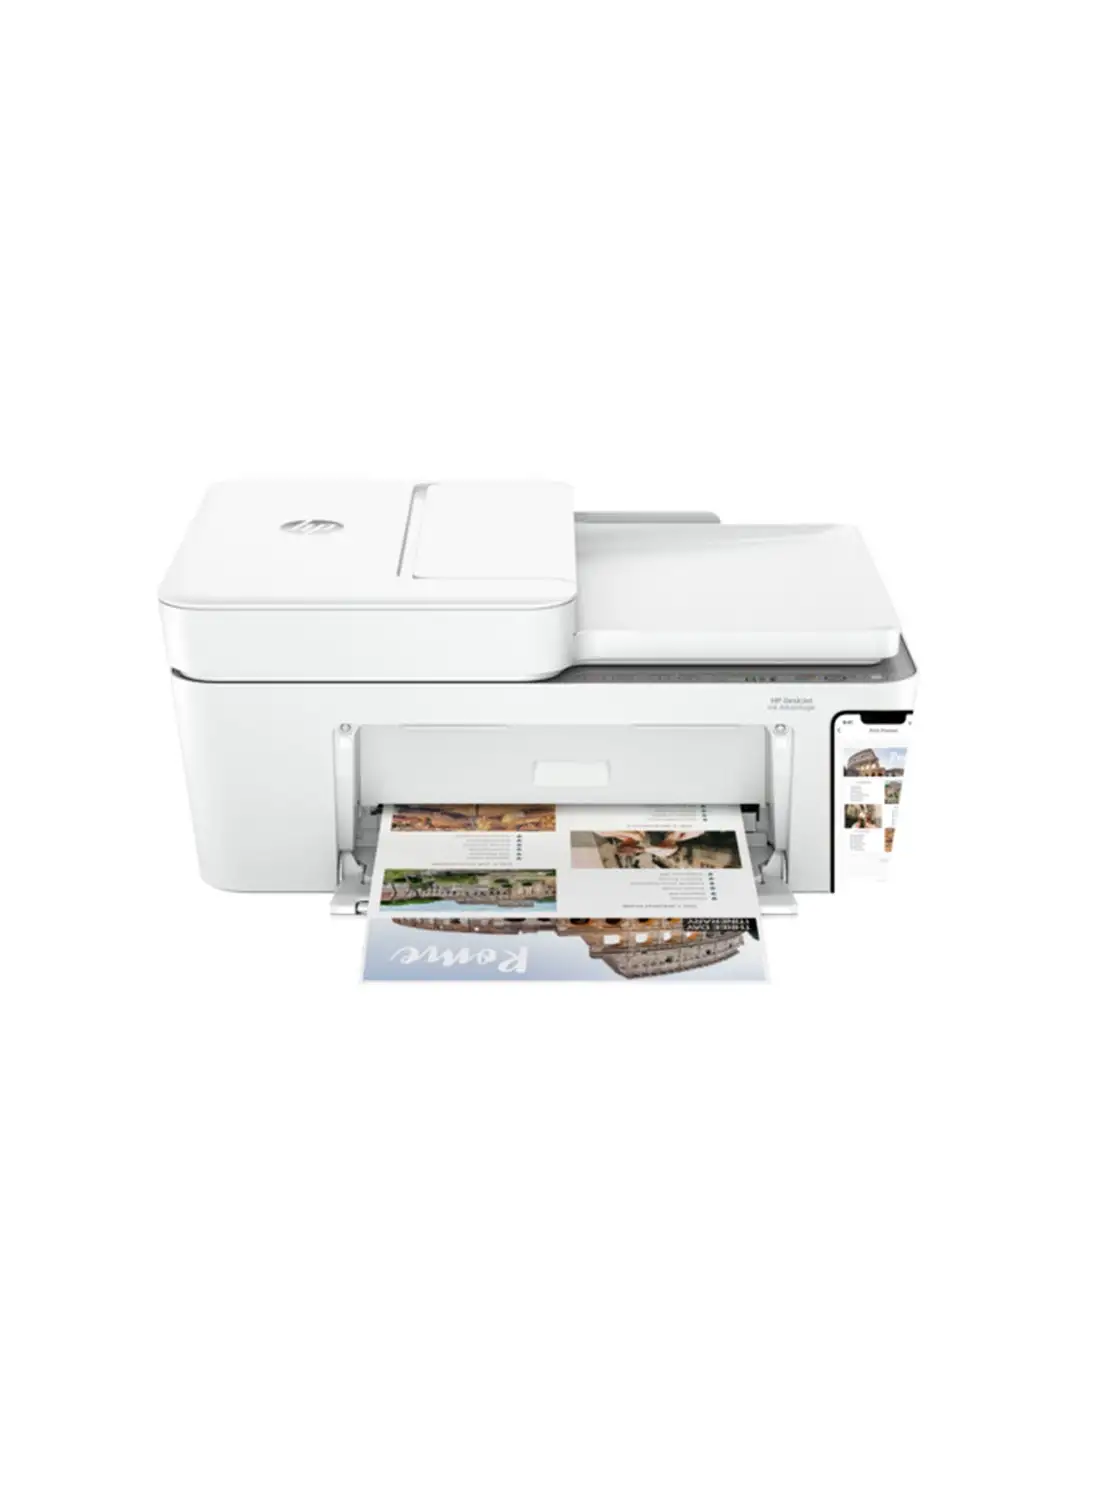 طابعة HP DeskJet Ink Advantage 4276 الكل في واحد باللون الأبيض